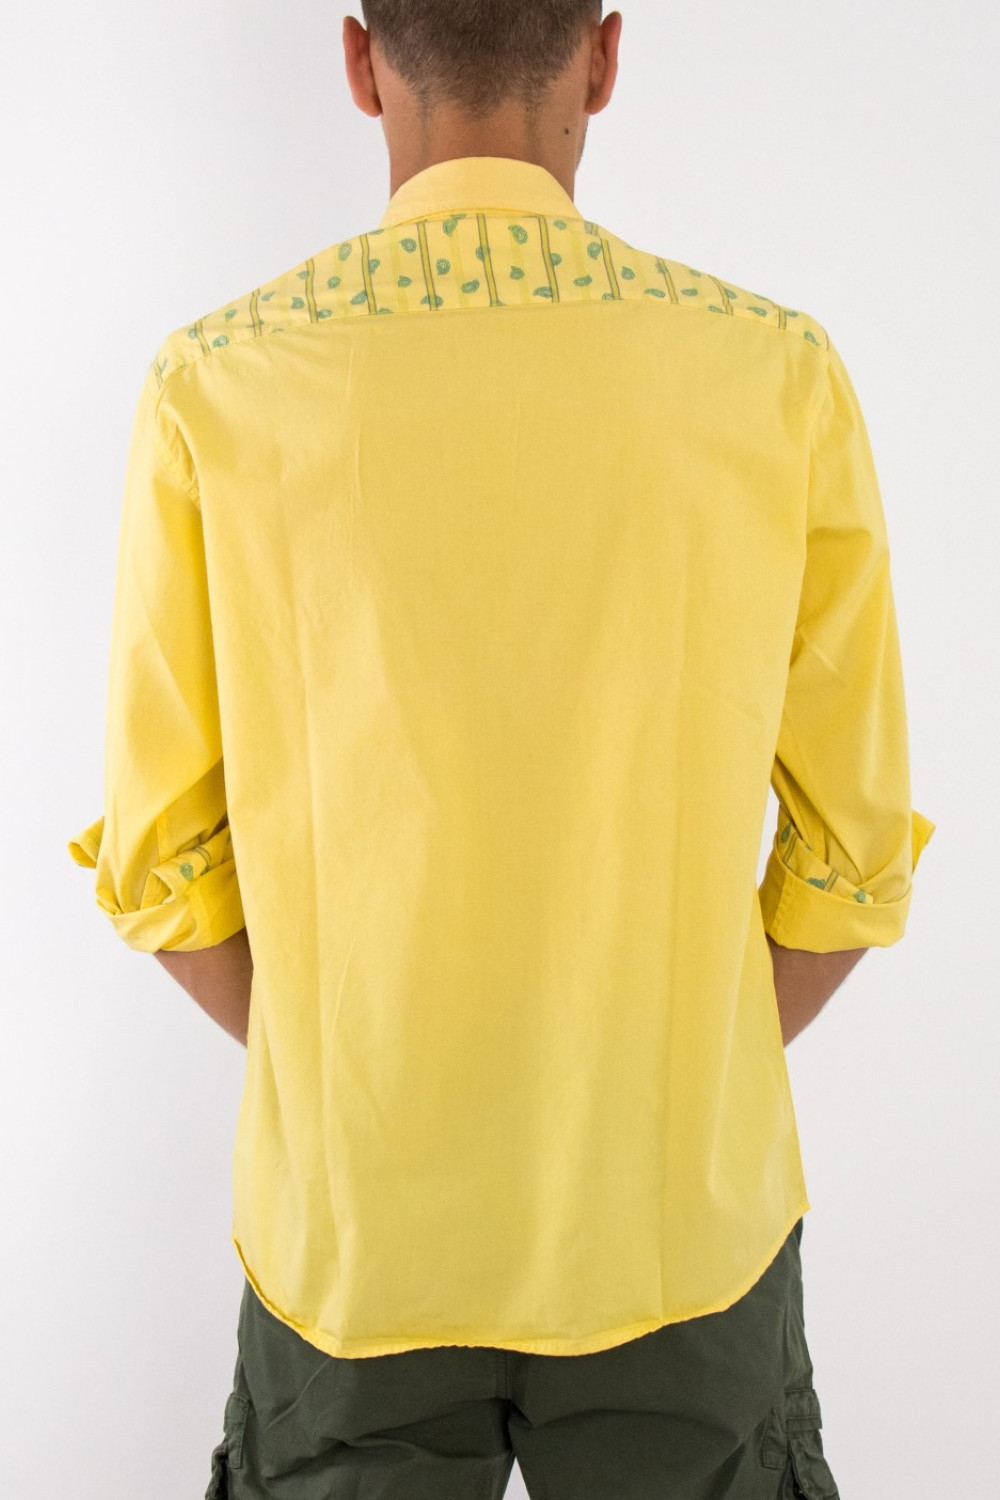 Ανδρικό κίτρινο πουκάμισο με τσέπες STK1042